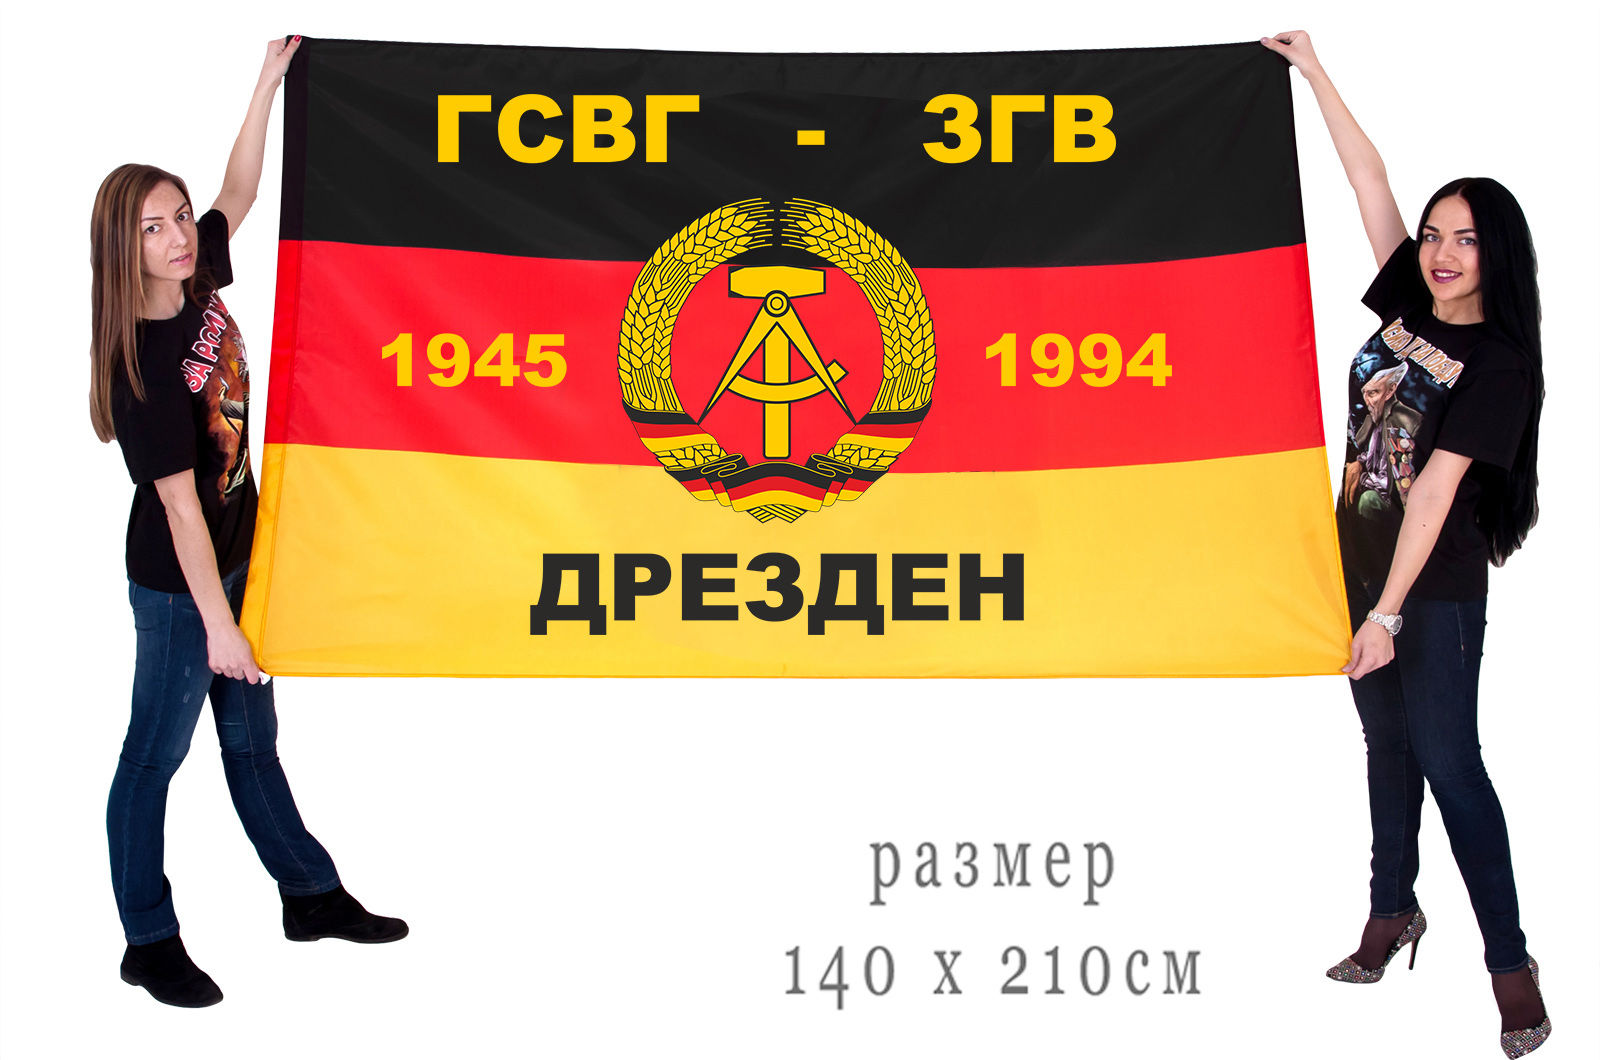 Большой флаг ГСВГ-ЗГВ "Дрезден" 1945-1994